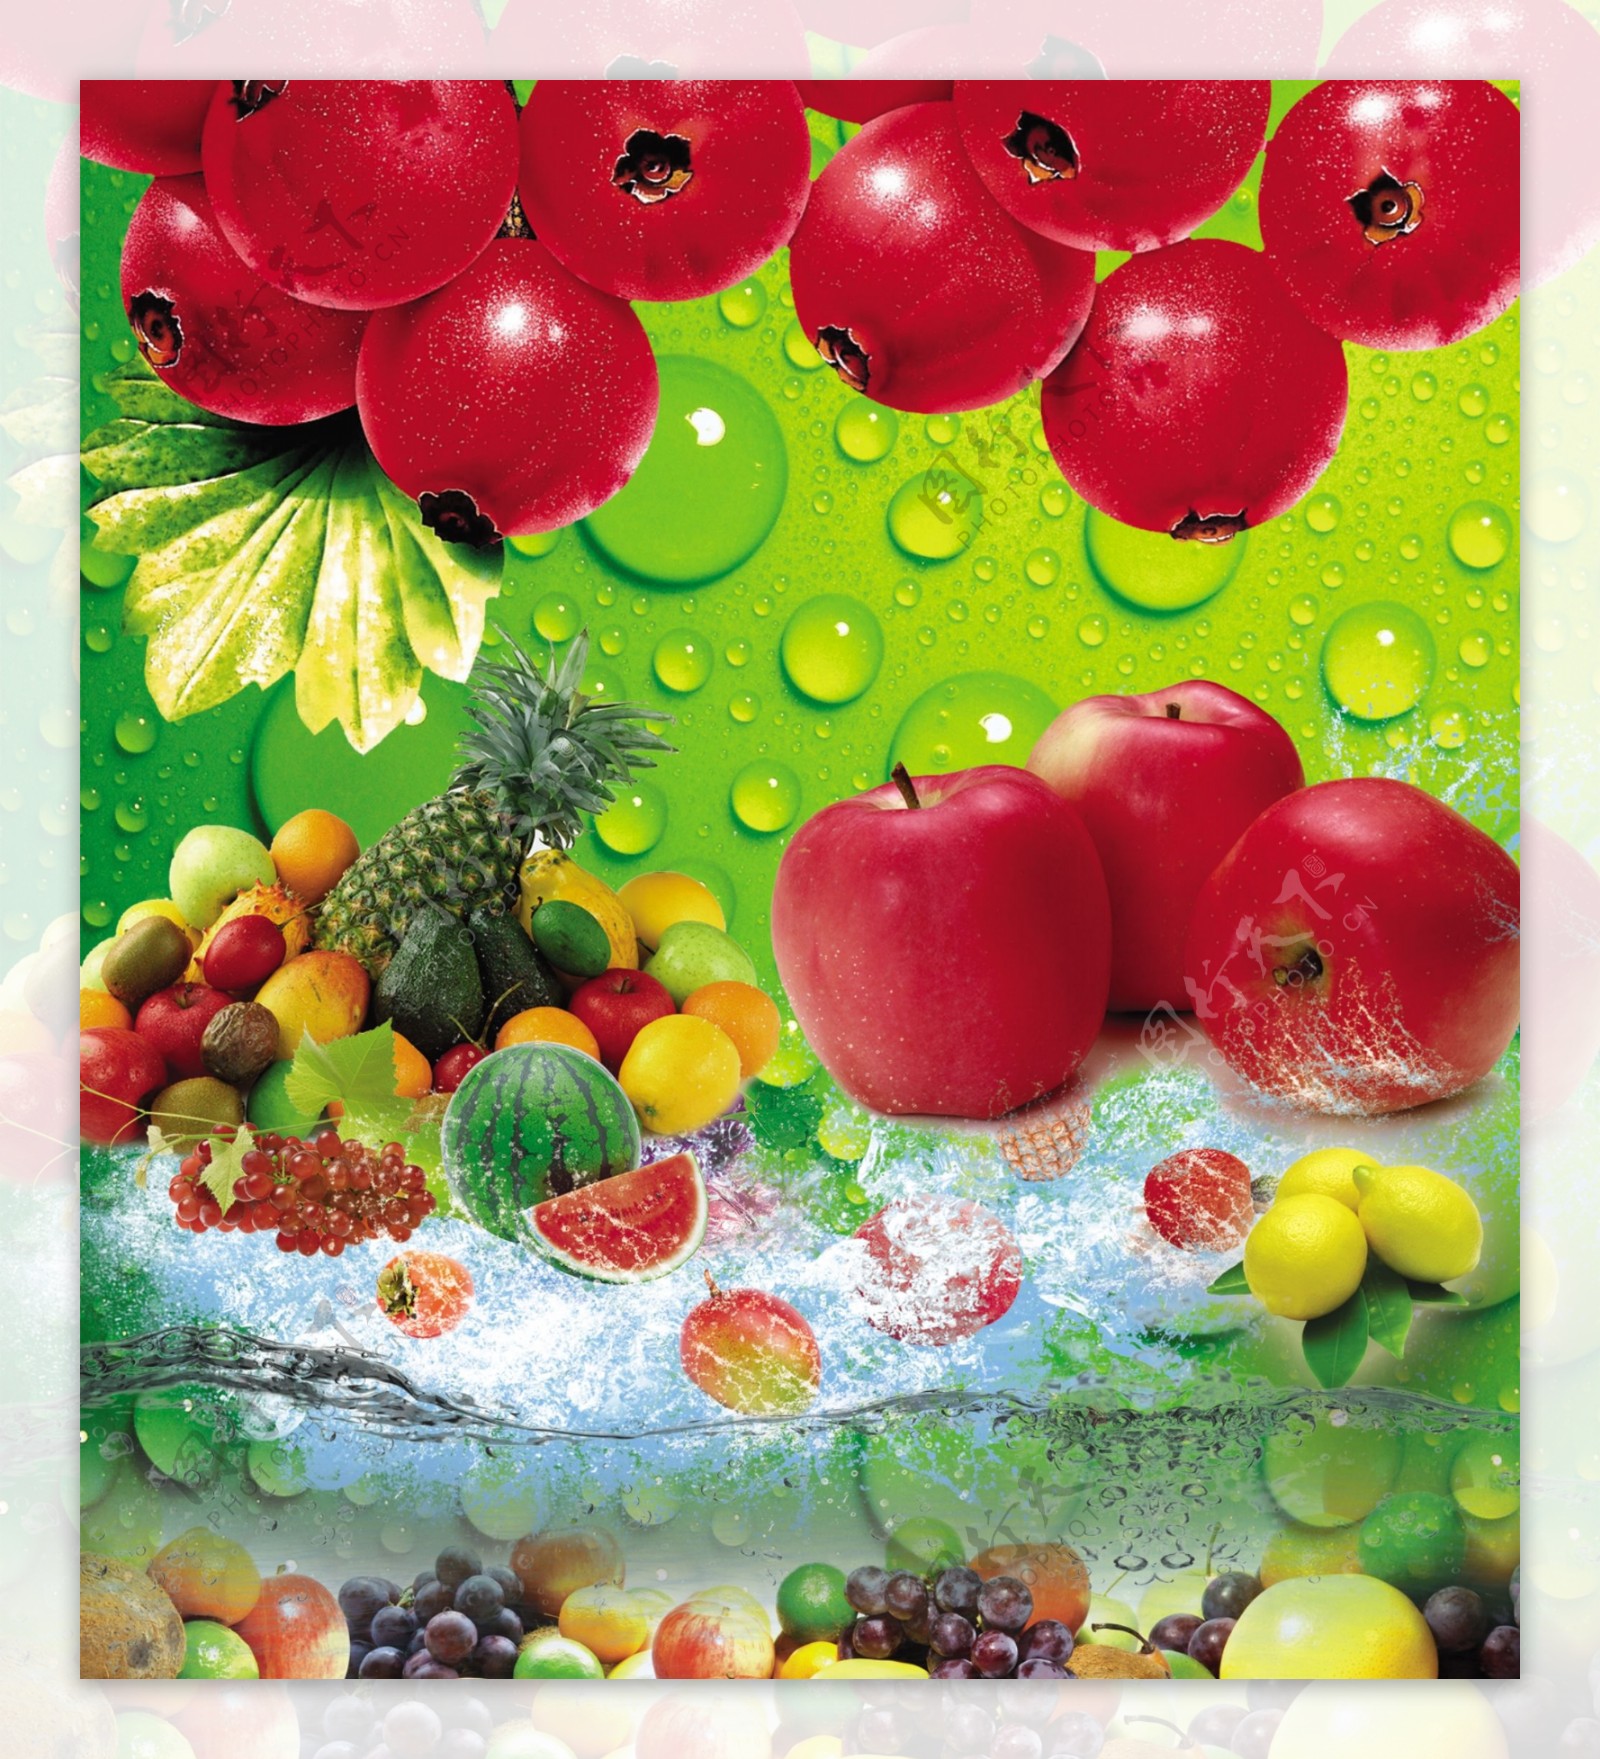 水果各种水果夏日冰凉苹果西瓜